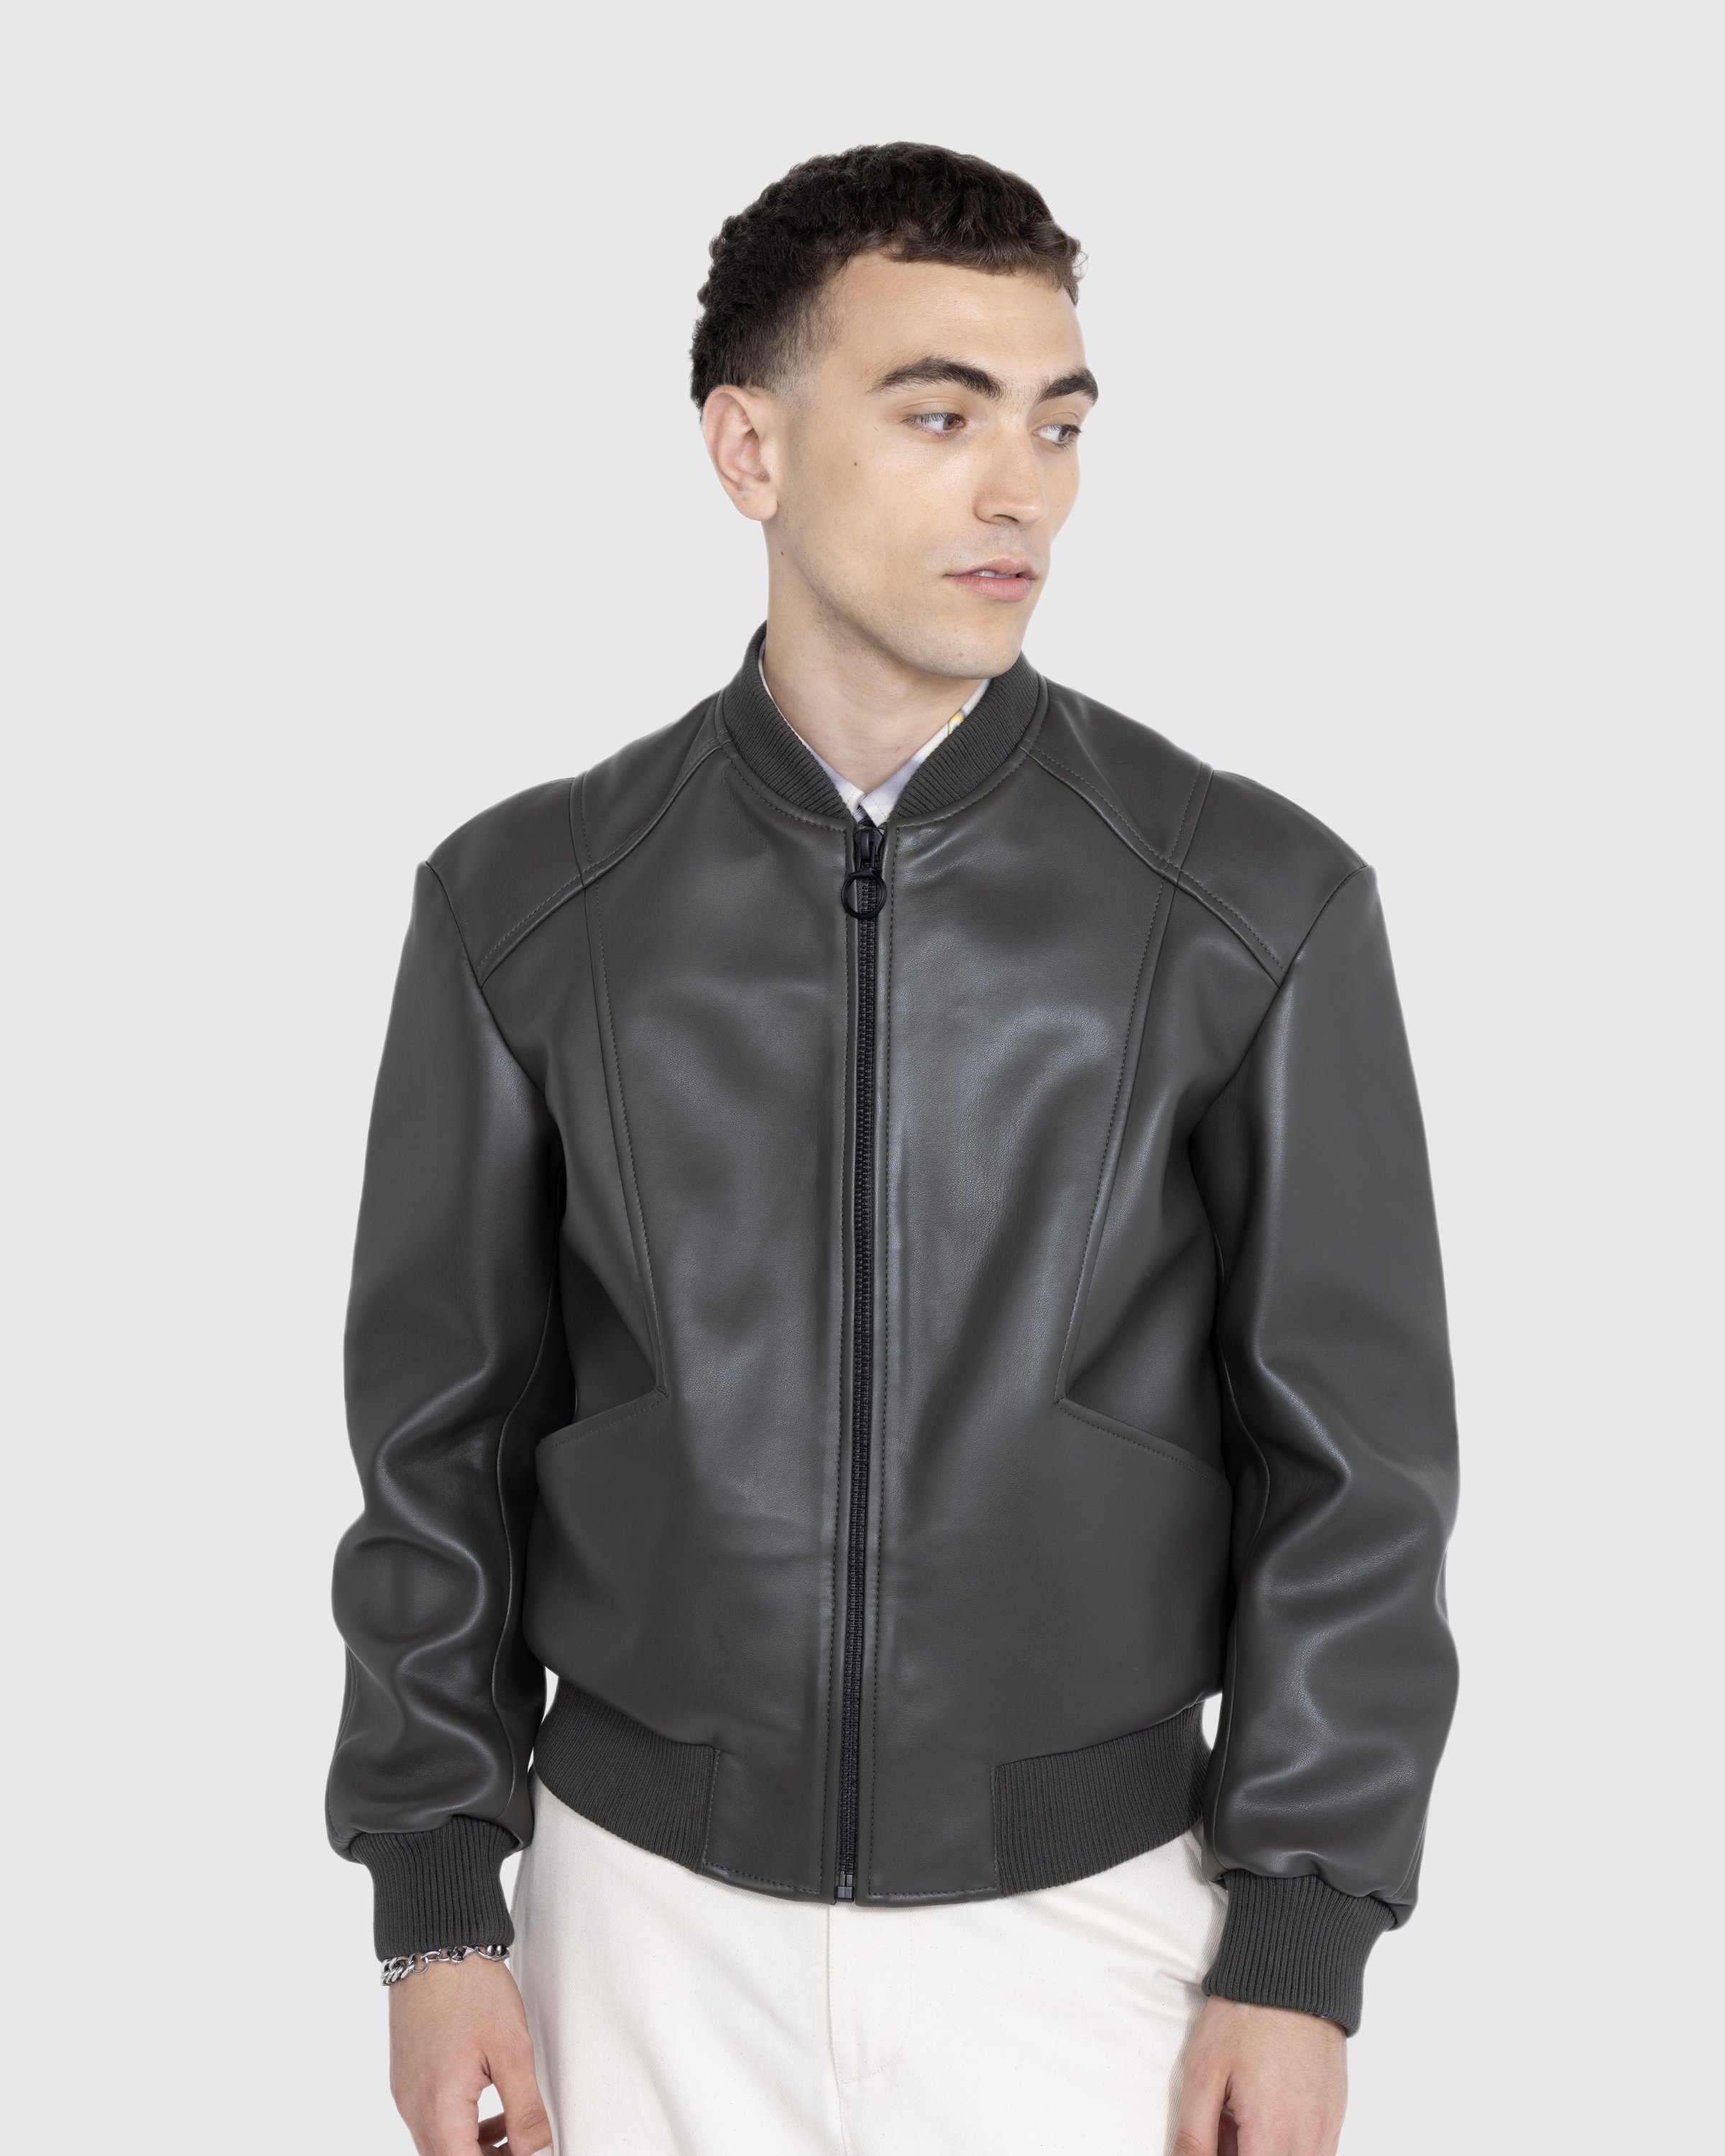 Trussardi - Jacket Faux Leather Bonded - Clothing - Green - Image 2